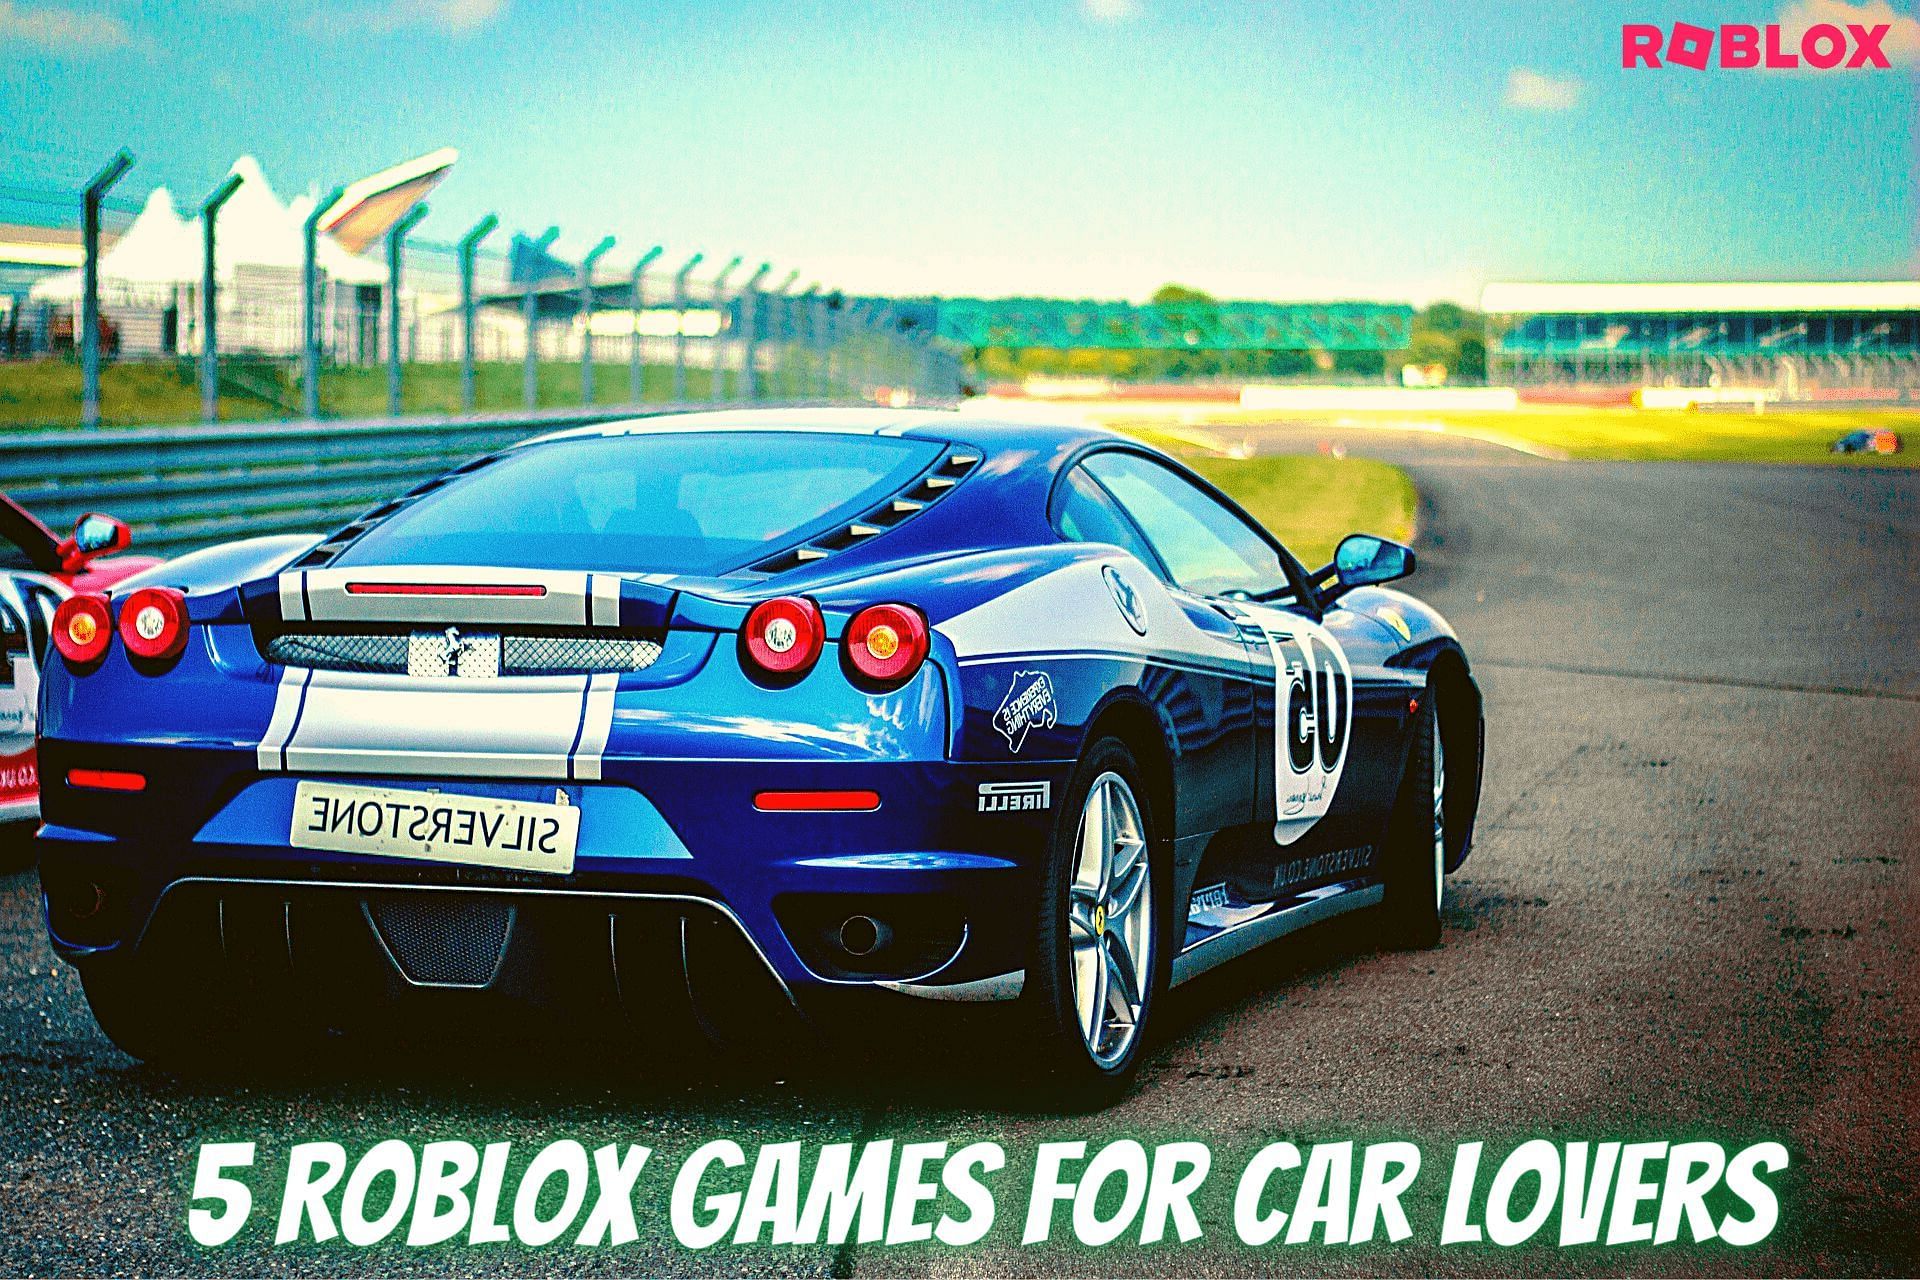 Car games in Roblox (Image via Sportskeeda)